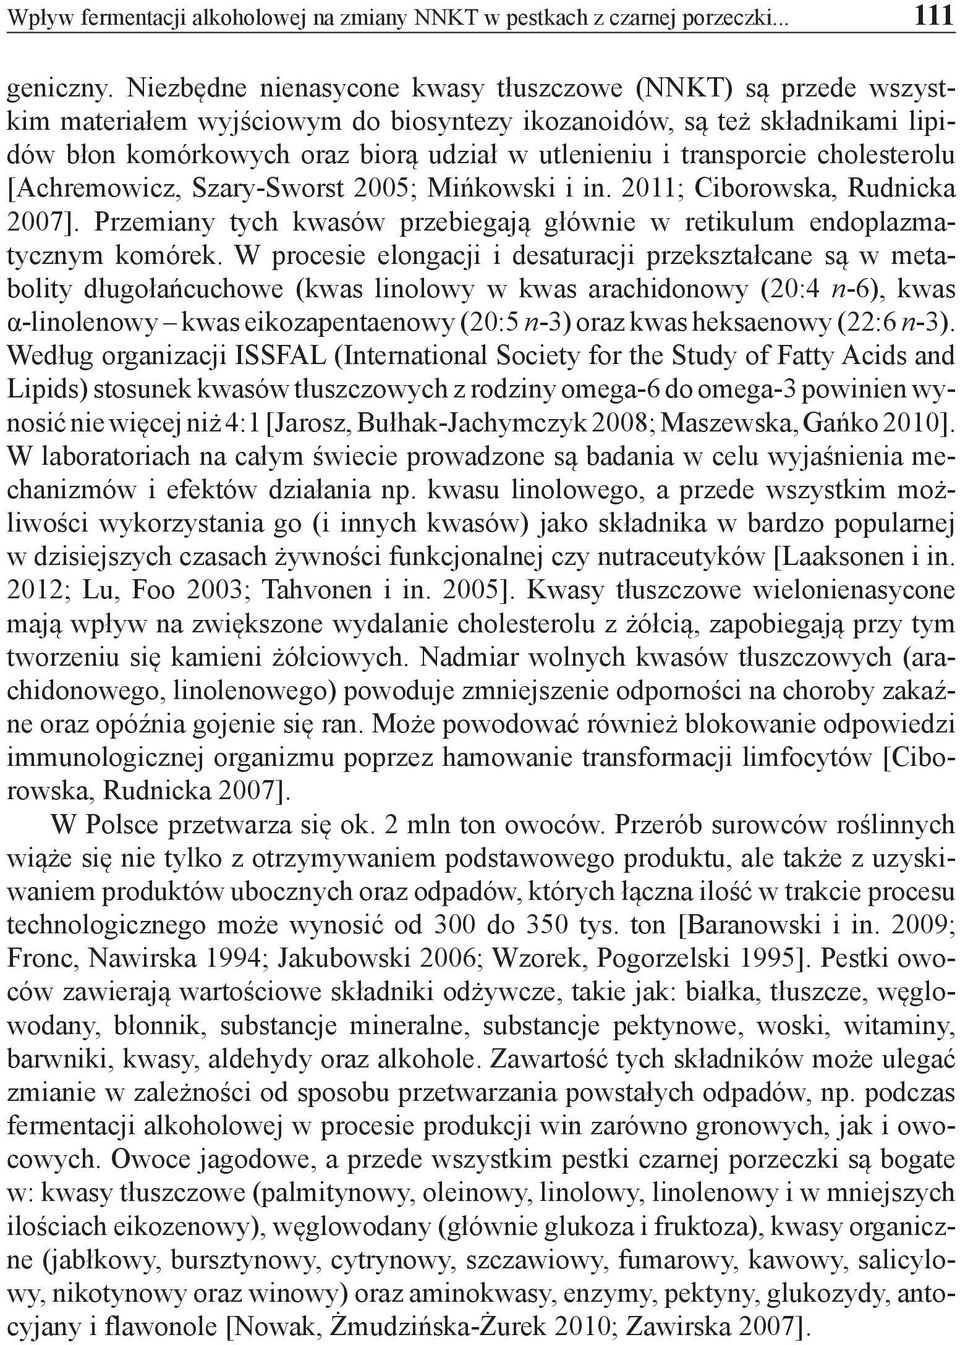 transporcie cholesterolu [Achremowicz, Szary-Sworst 2005; Mińkowski i in. 2011; Ciborowska, Rudnicka 2007]. Przemiany tych kwasów przebiegają głównie w retikulum endoplazmatycznym komórek.